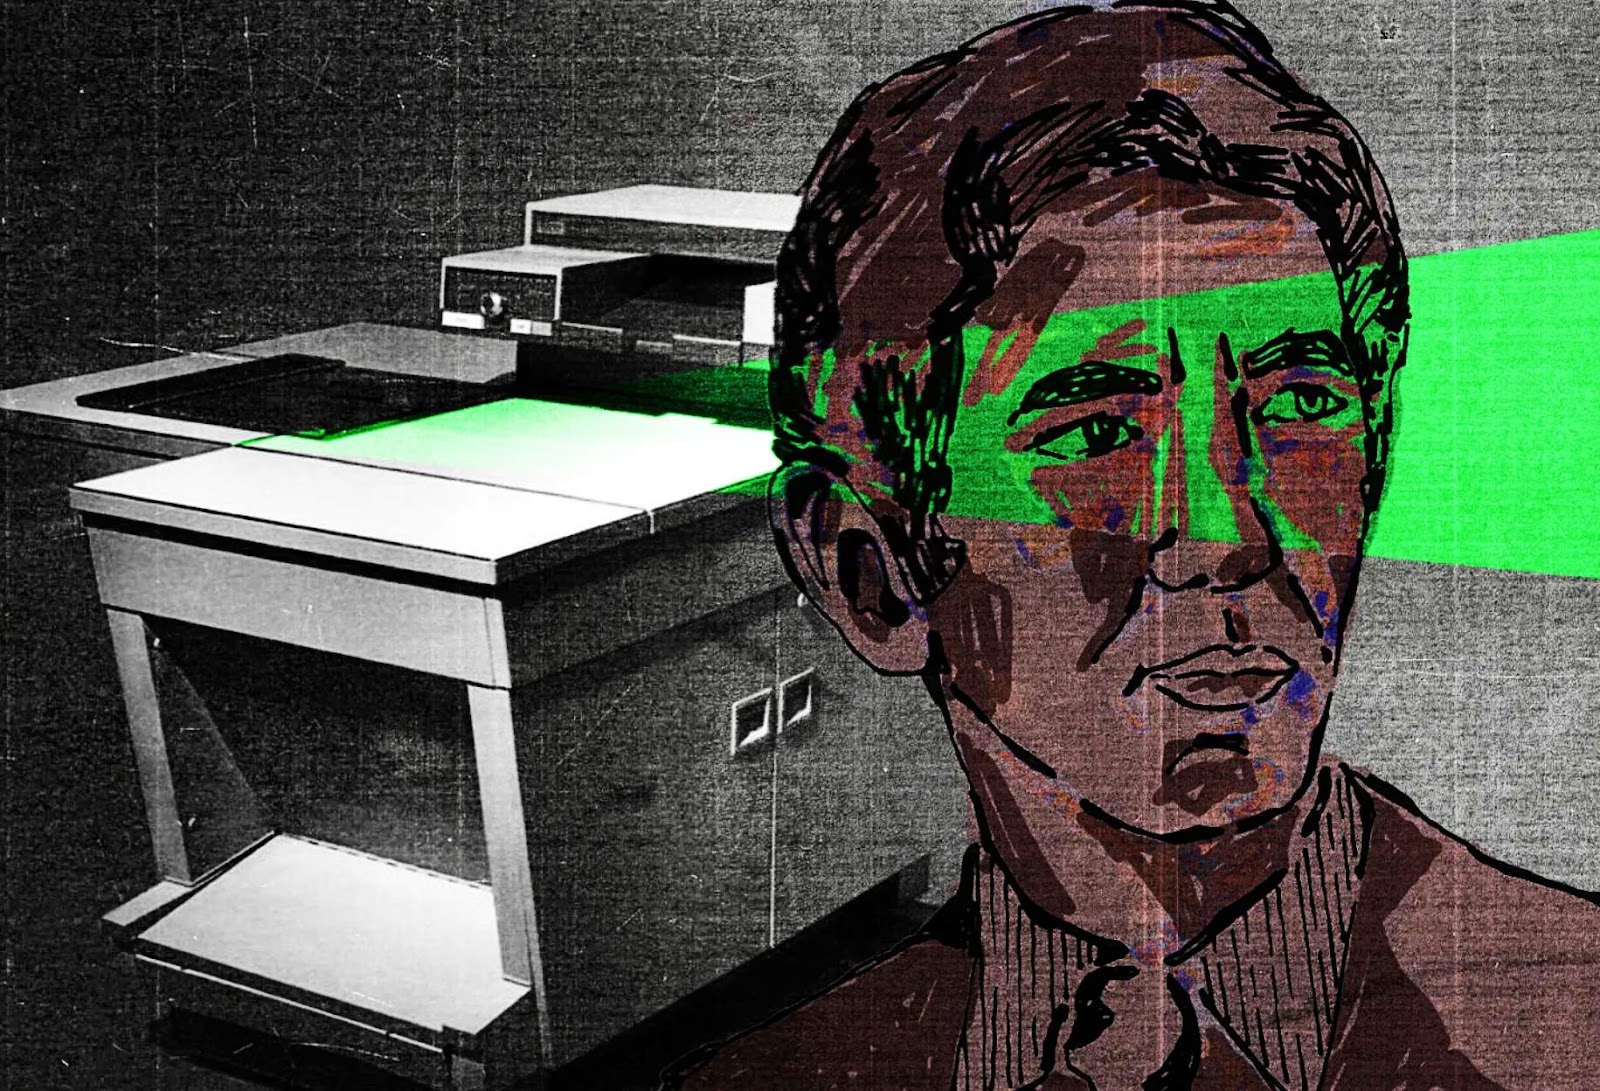 An illustration of Daniel Ellsberg, Pentagon Papers whistleblower 1971